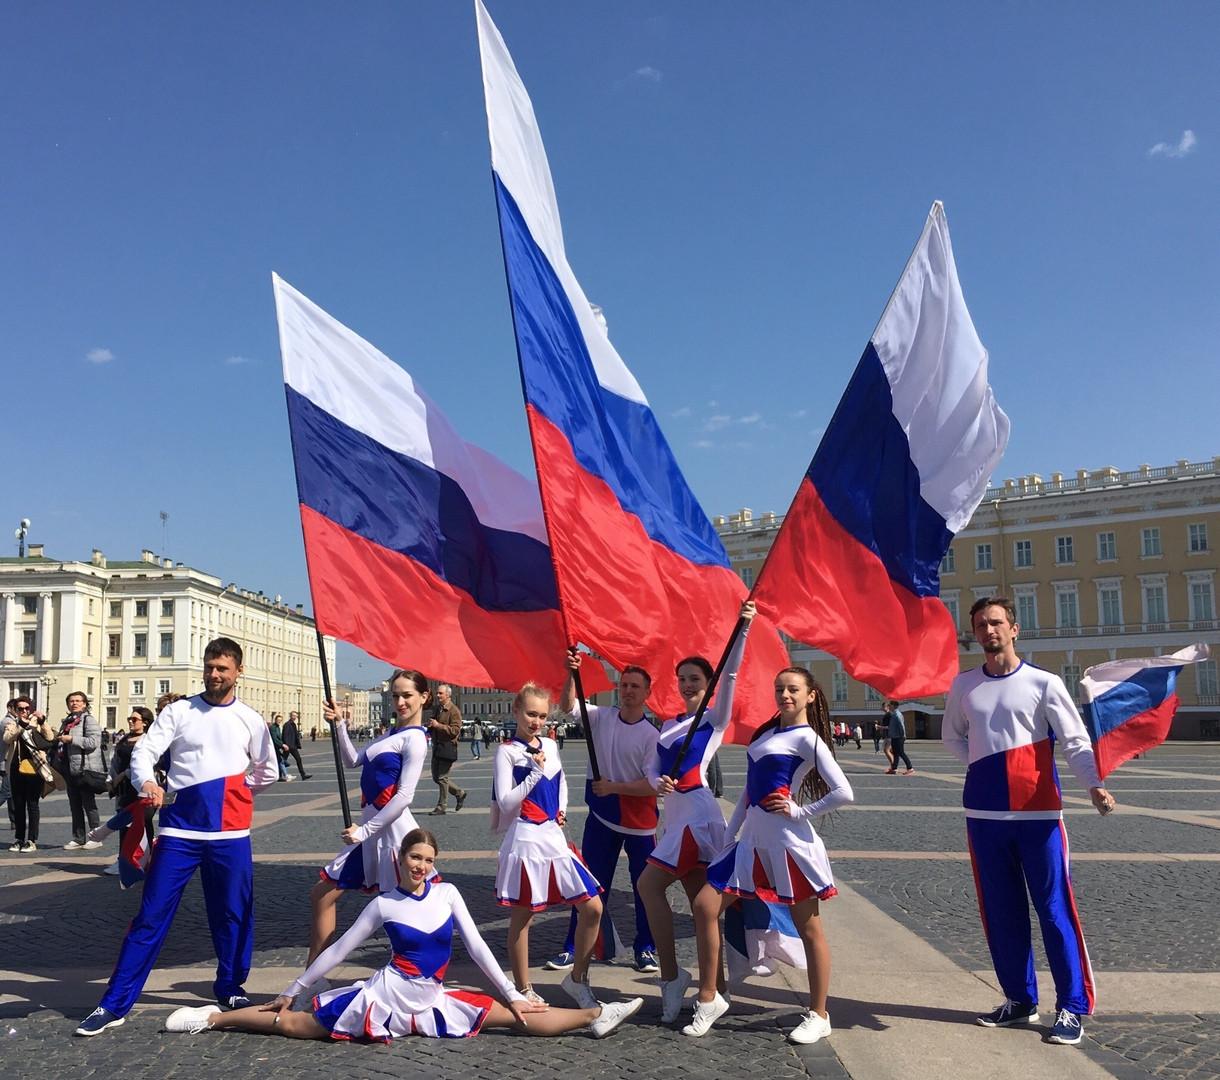 государственный флаг россии фото